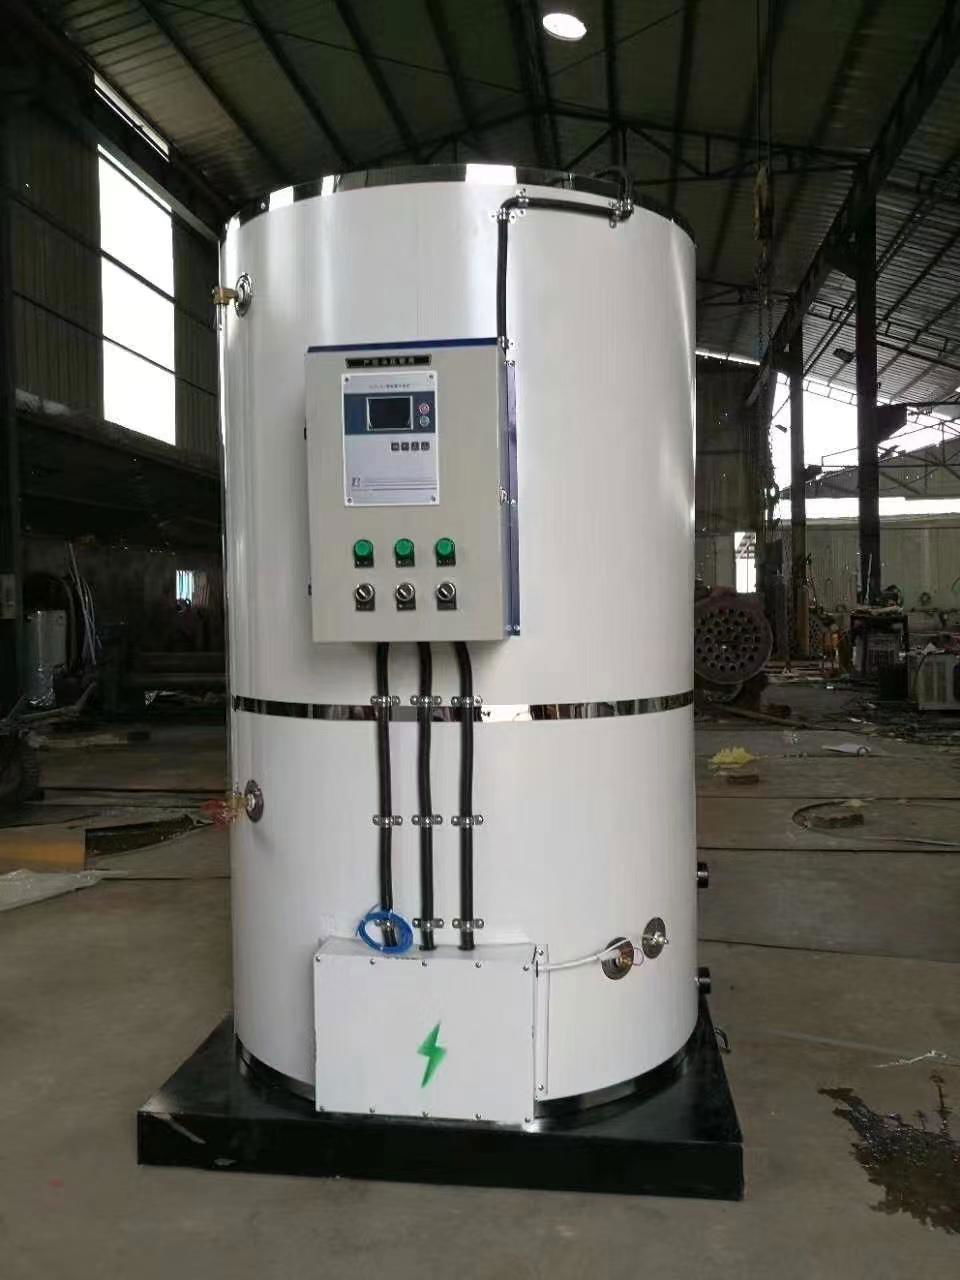   熱銷產品  304食品級不鏽鋼內膽  學校專用電開水鍋爐   DQX-500D 3